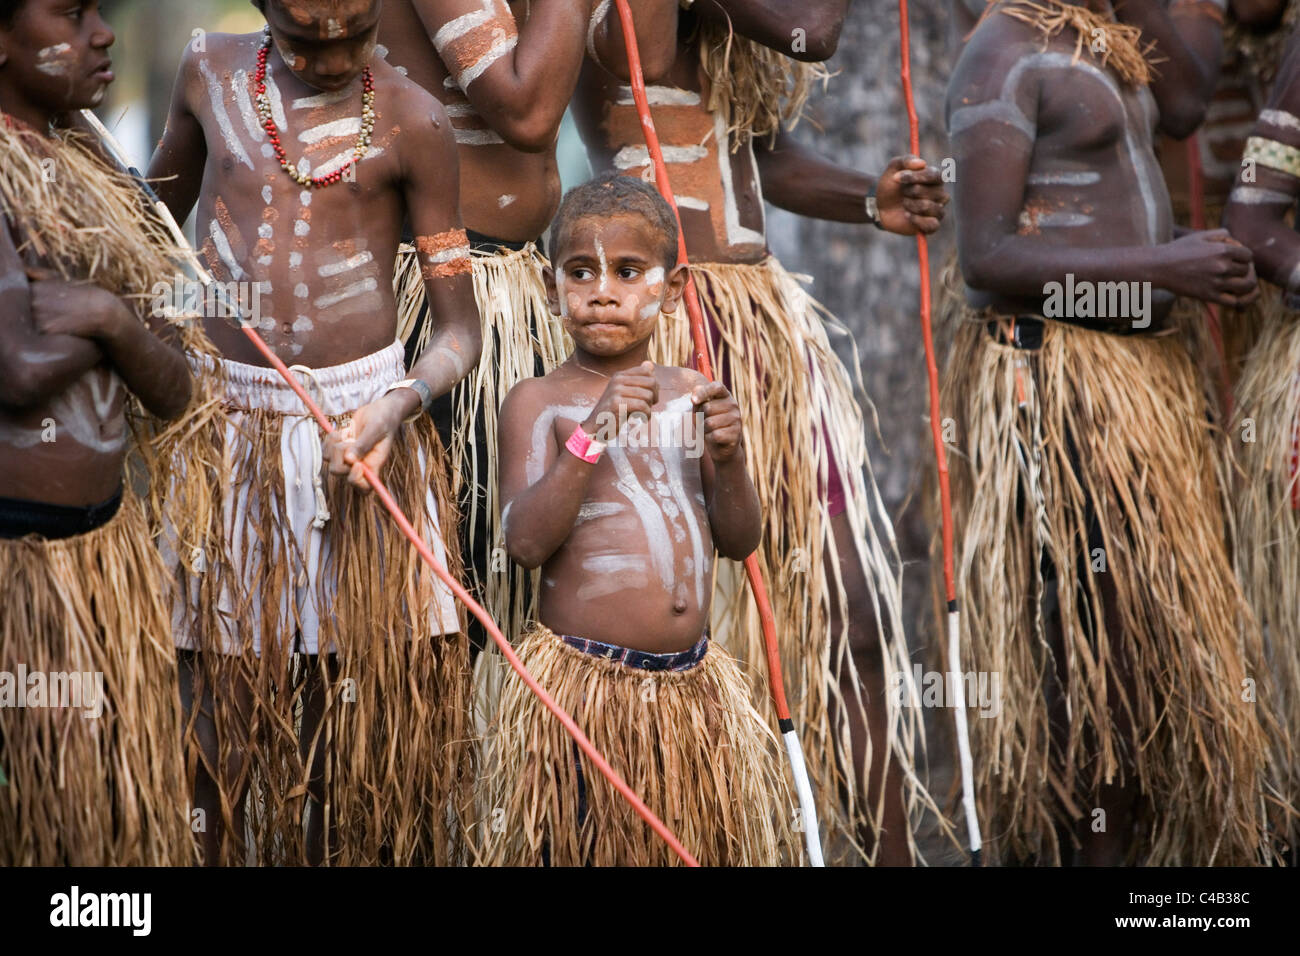 L'Australie, Queensland, Laura. Les danseurs de la rivière Lockhart au Festival de danse autochtones Laura. Banque D'Images